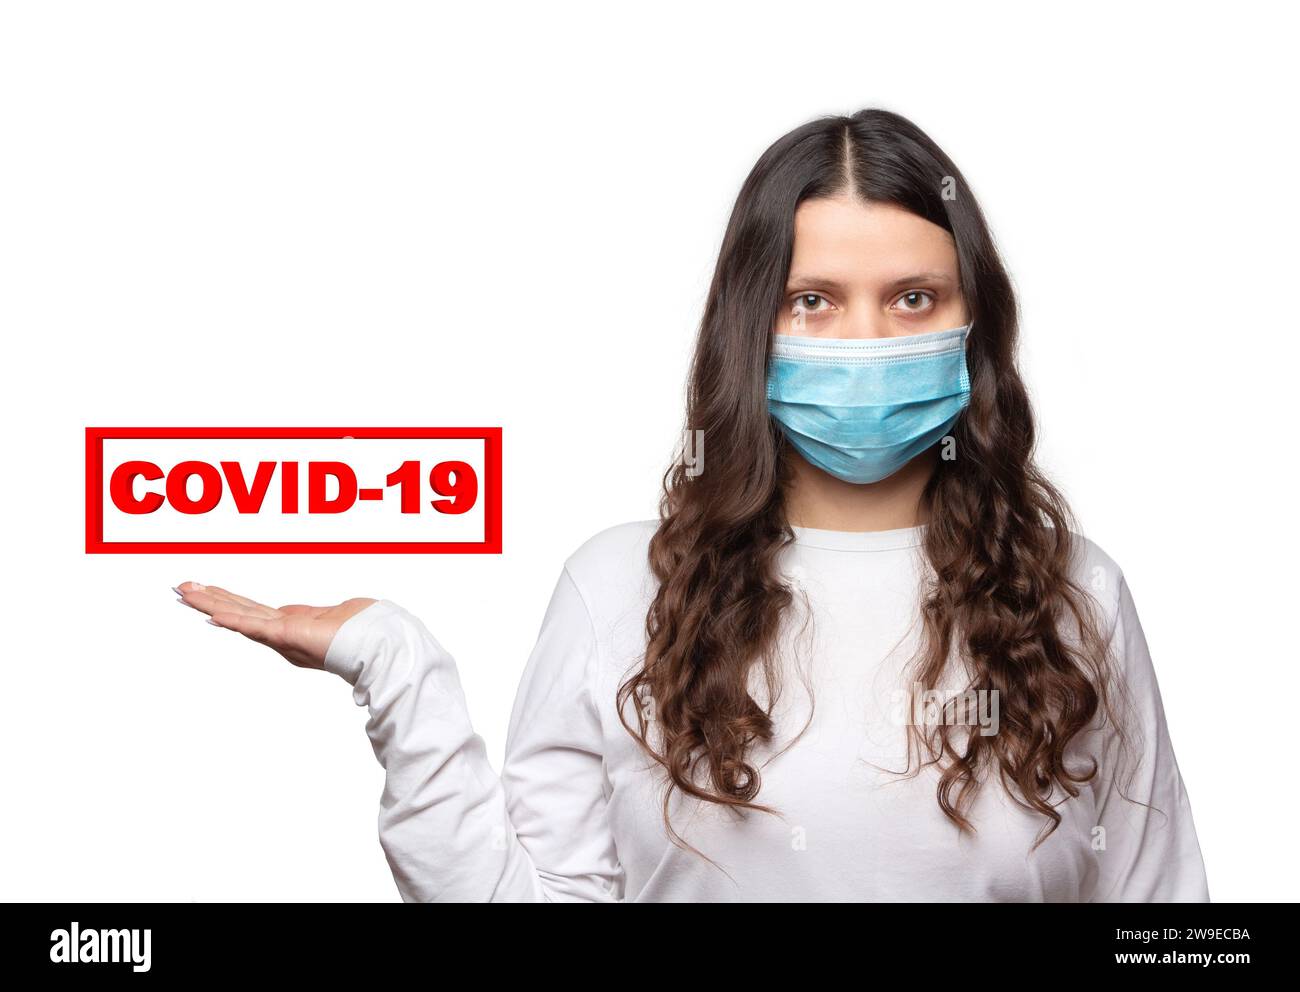 COVID-19. Una ragazza con una maschera medica protettiva tiene sulla mano il testo rosso Coronavirus su sfondo bianco. Foto Stock